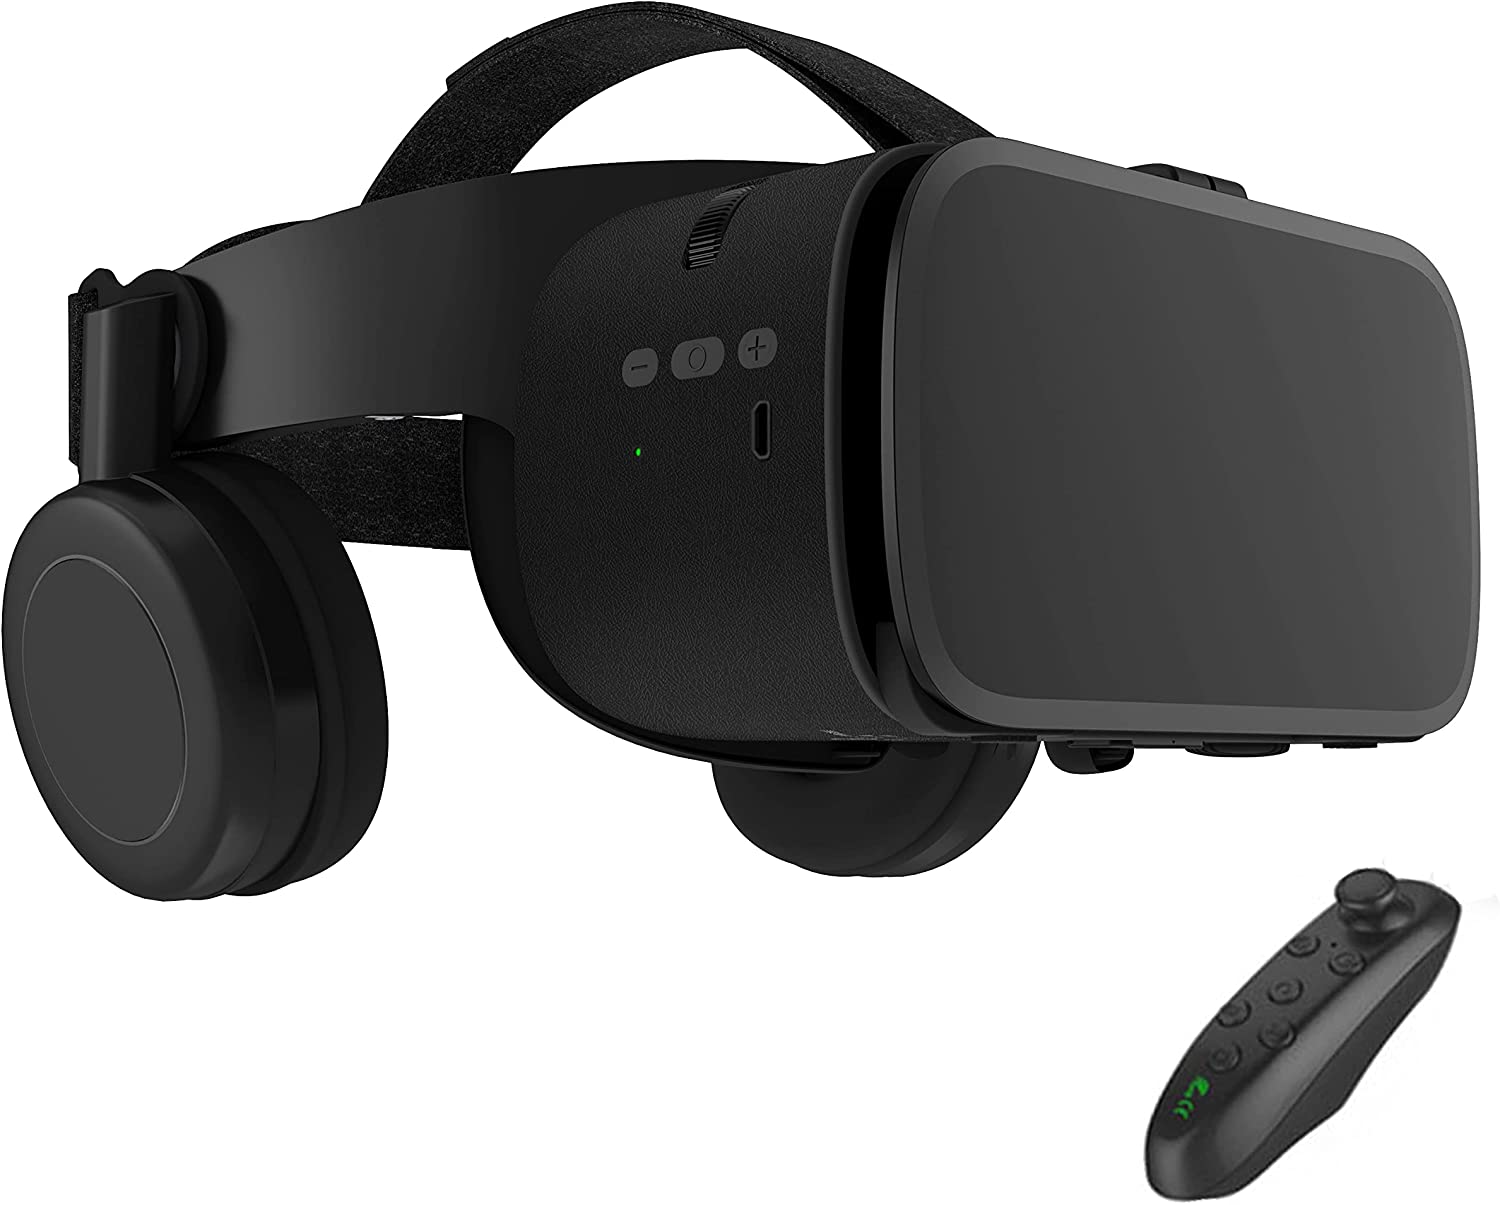 Best VR Headset Under 100